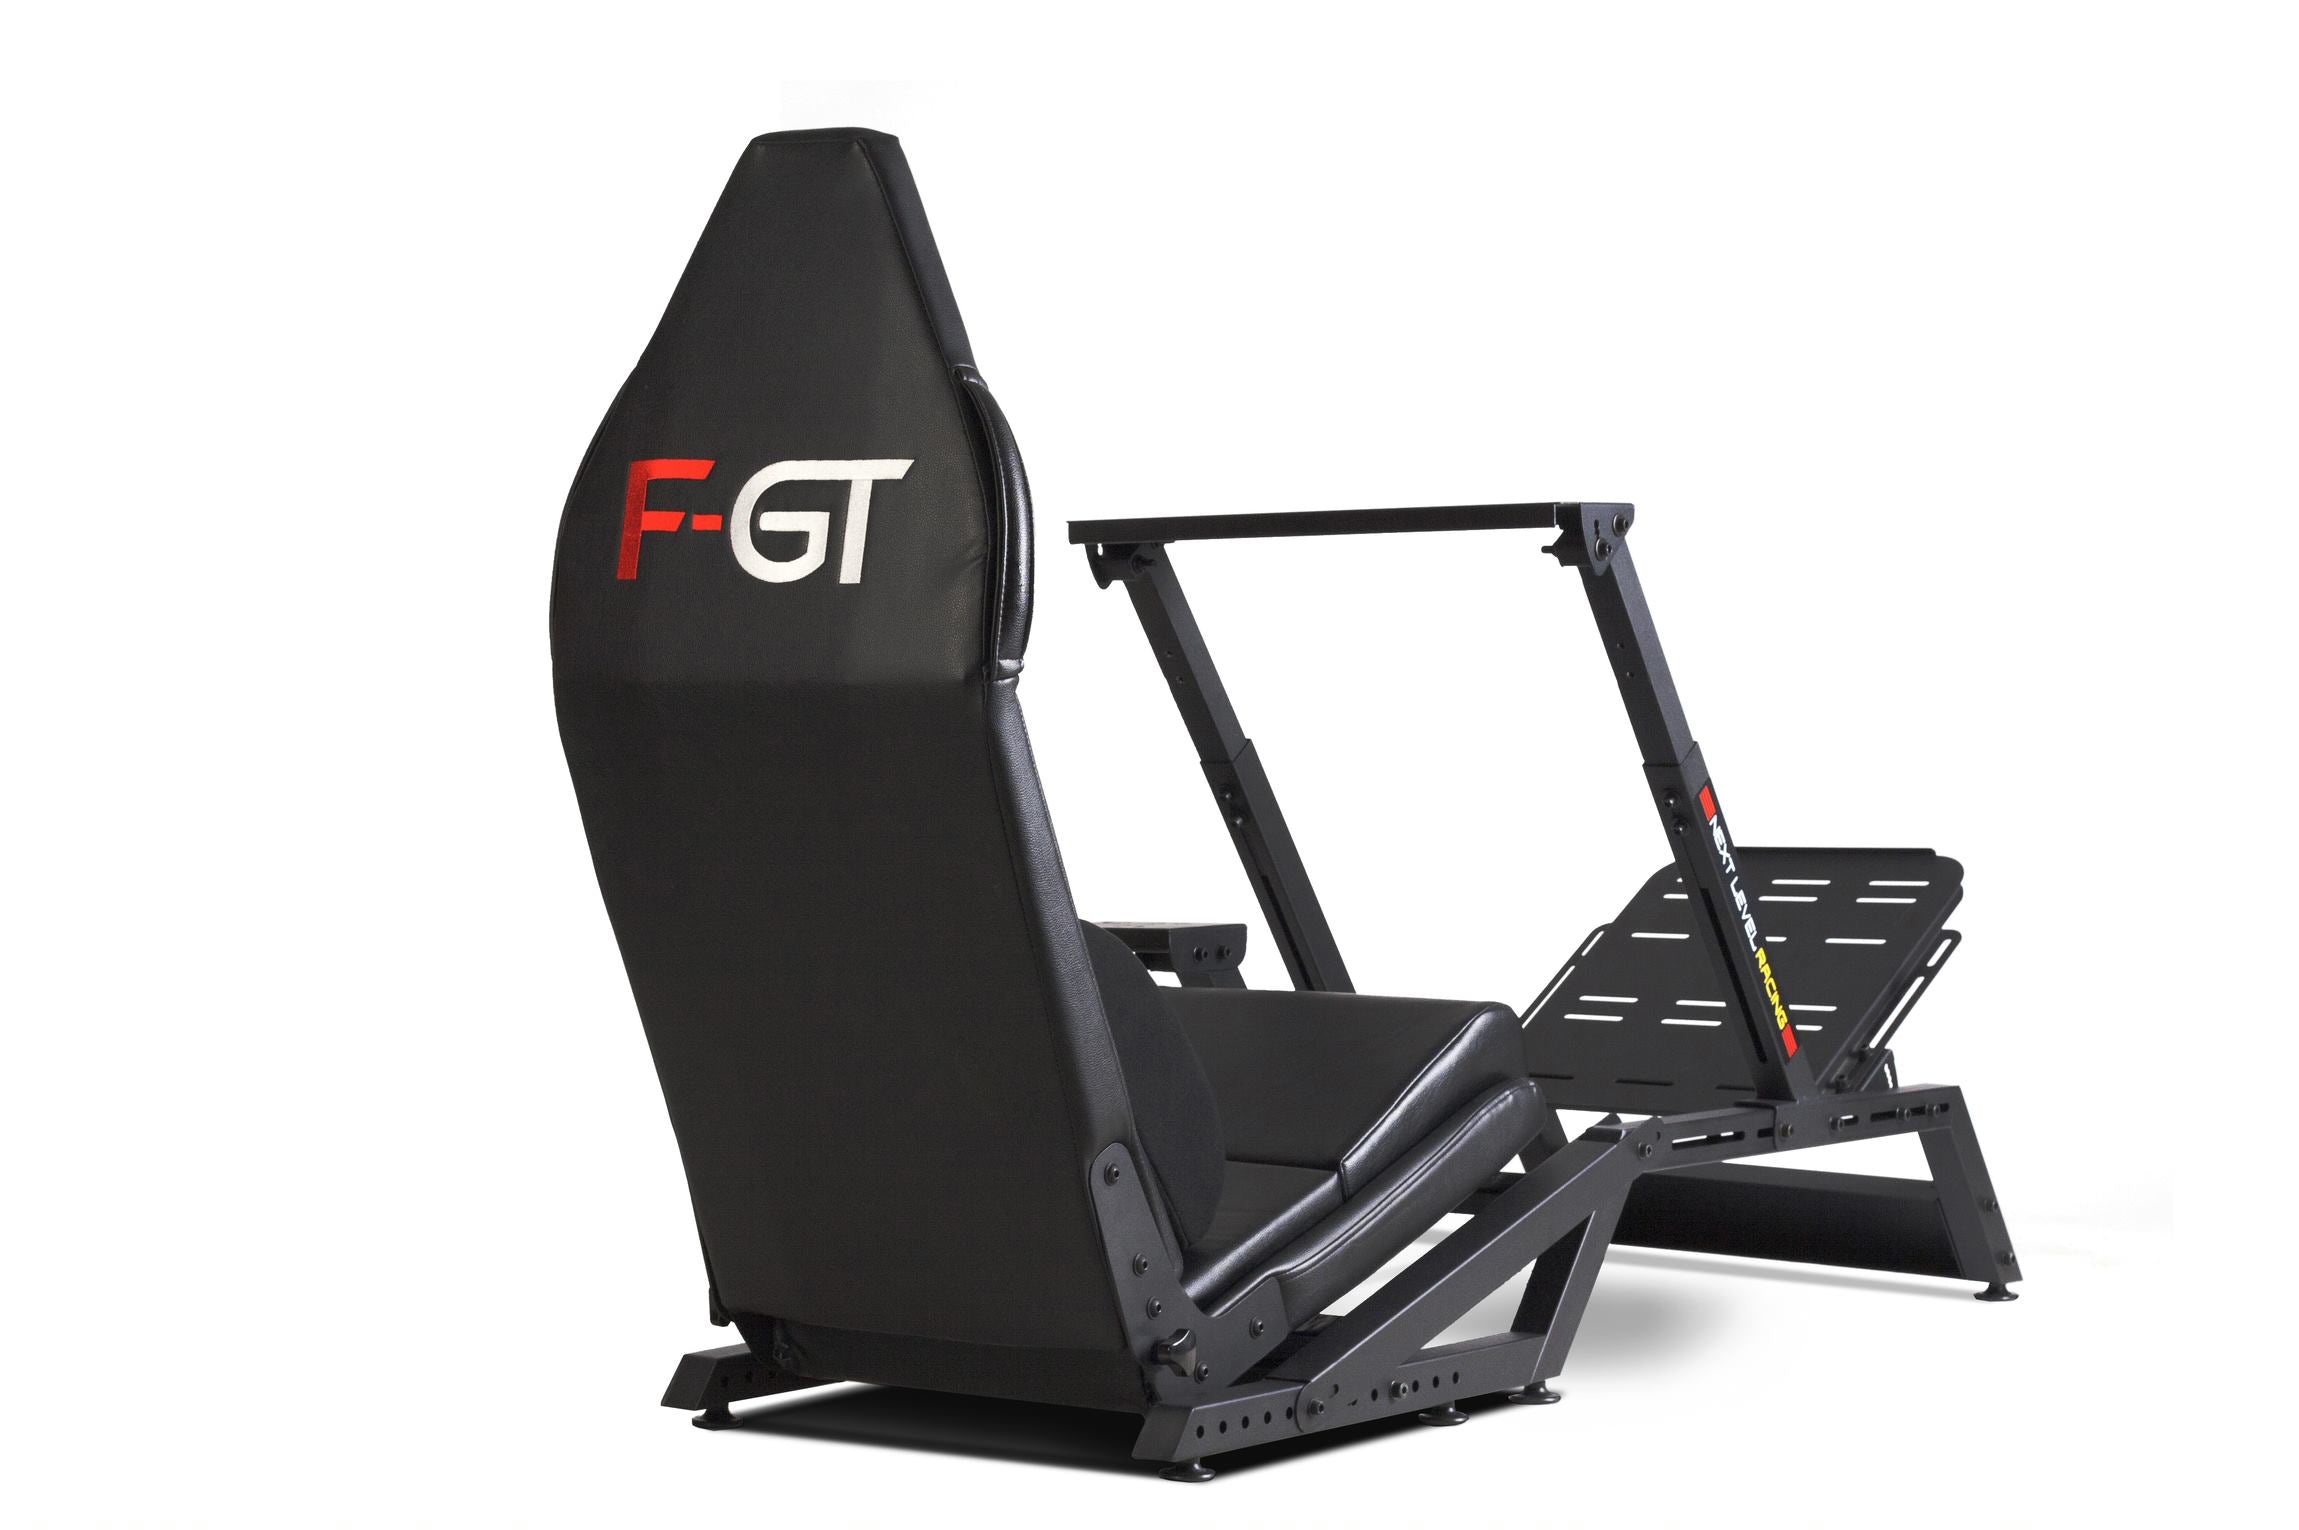 Next Level Racing F-GT Formula and GT Simulator Cockpit – Matte Black